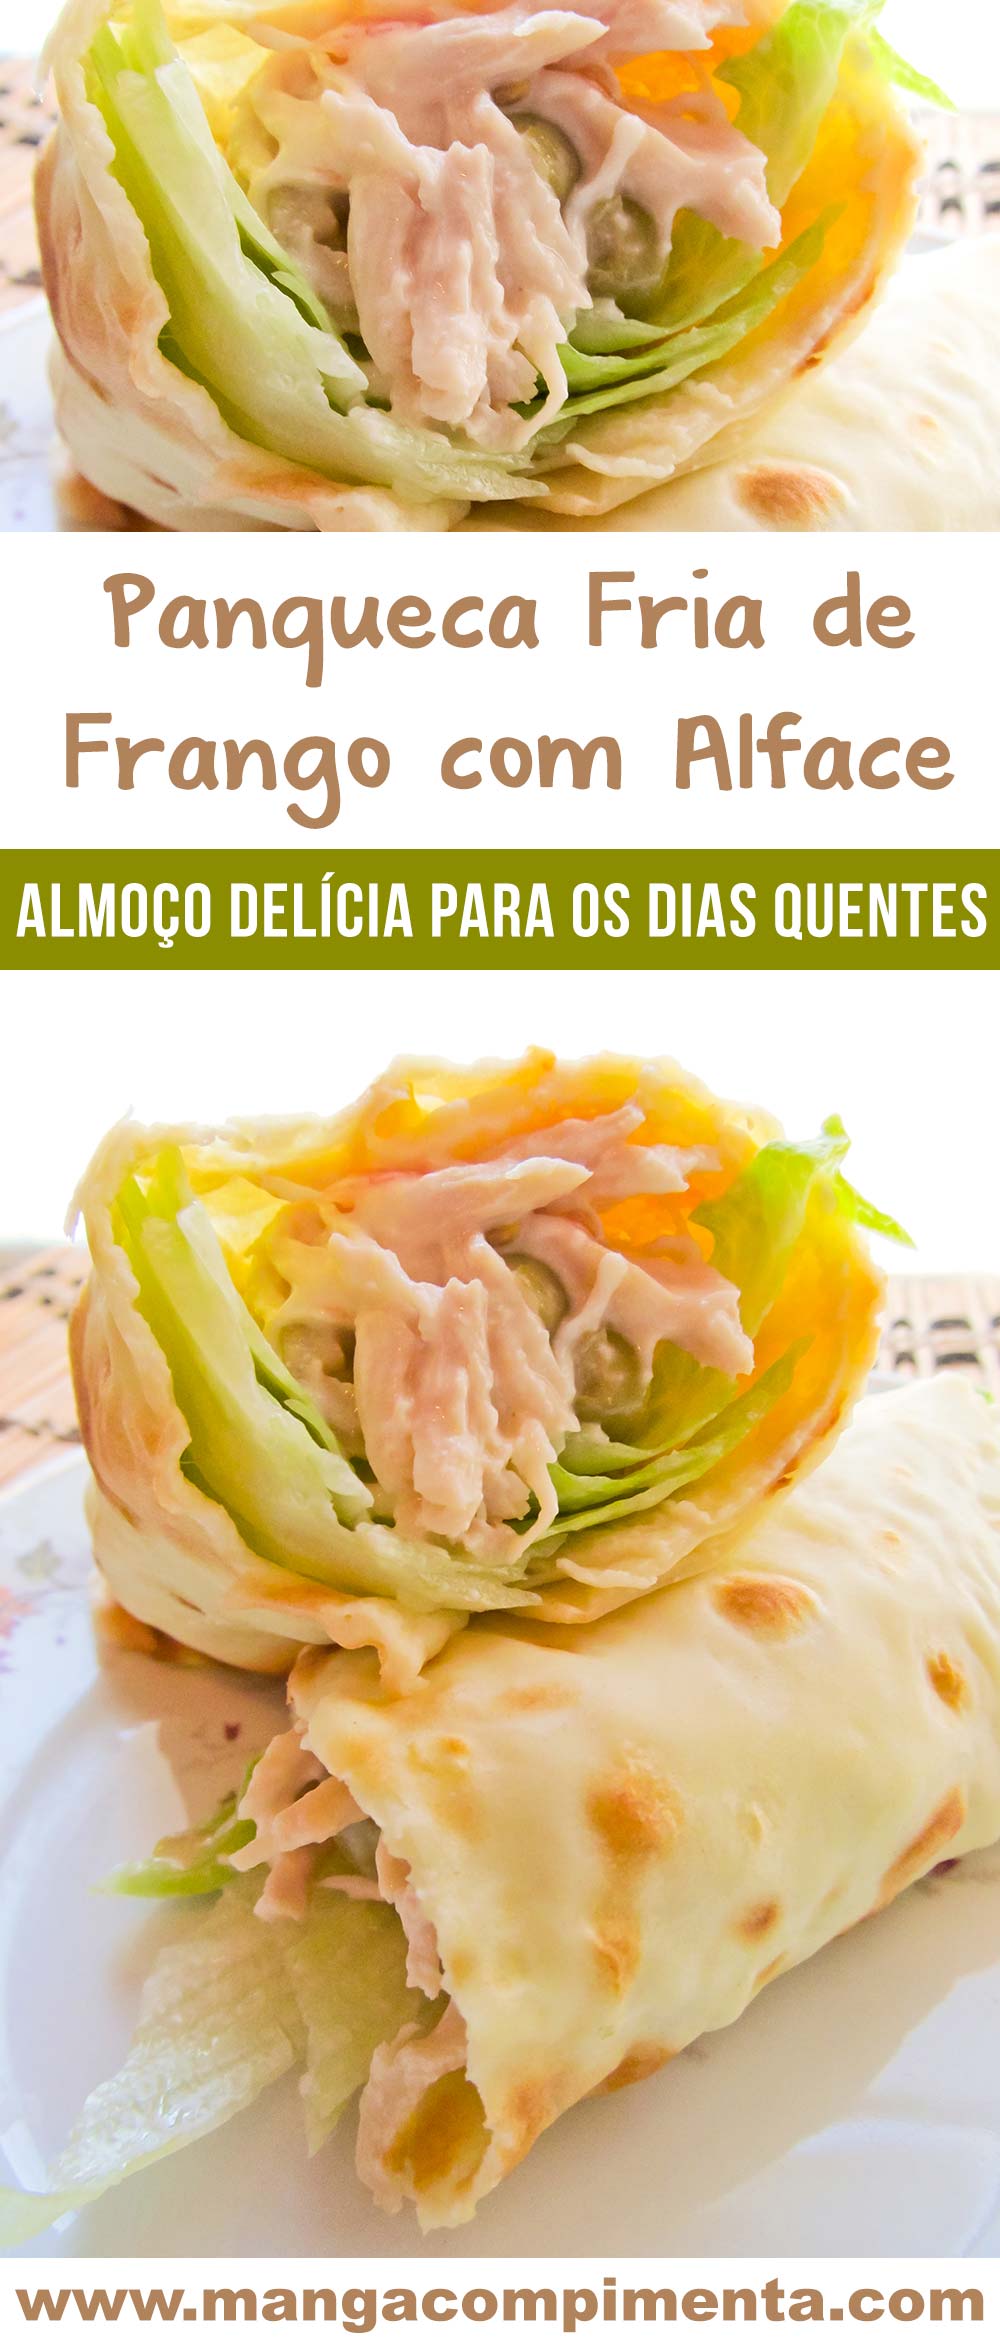 Panqueca Fria de Frango com Alface - um almoço (ou lanche) leve e nutritivo para dia quentes!